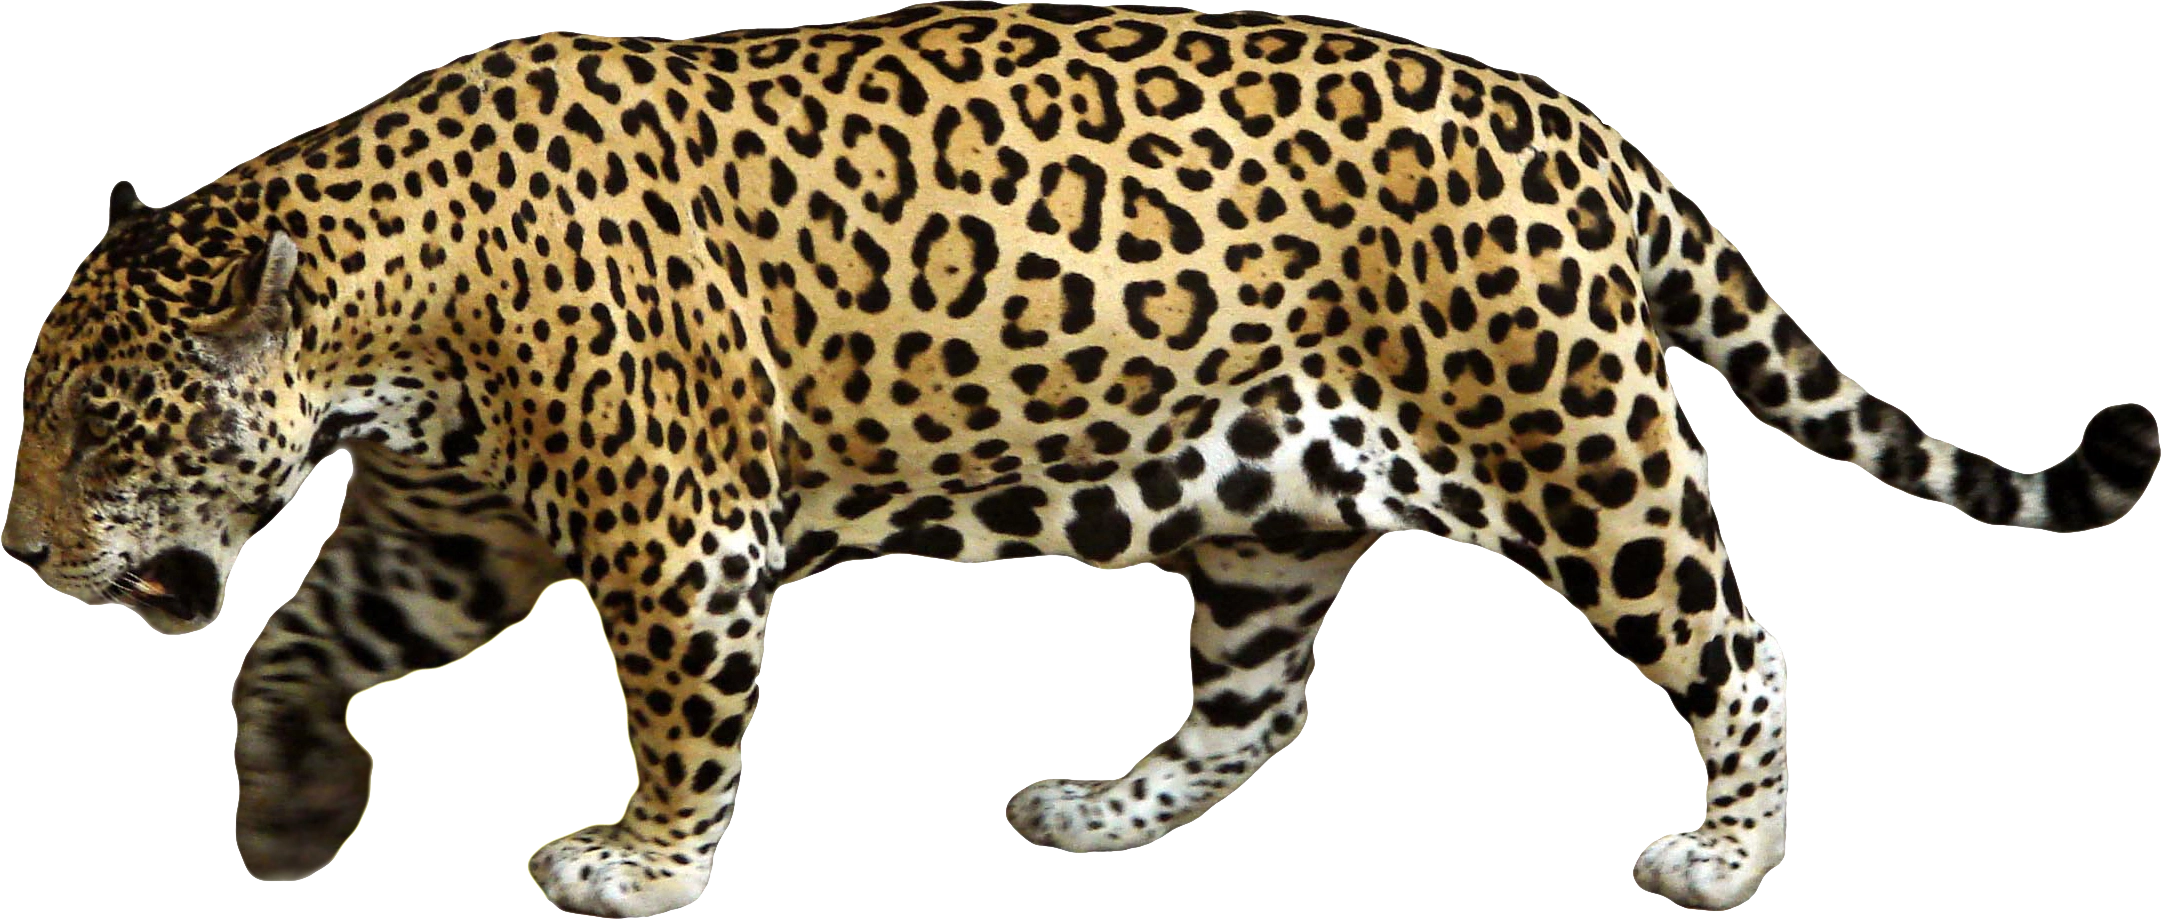 Leopards Download PNG Image